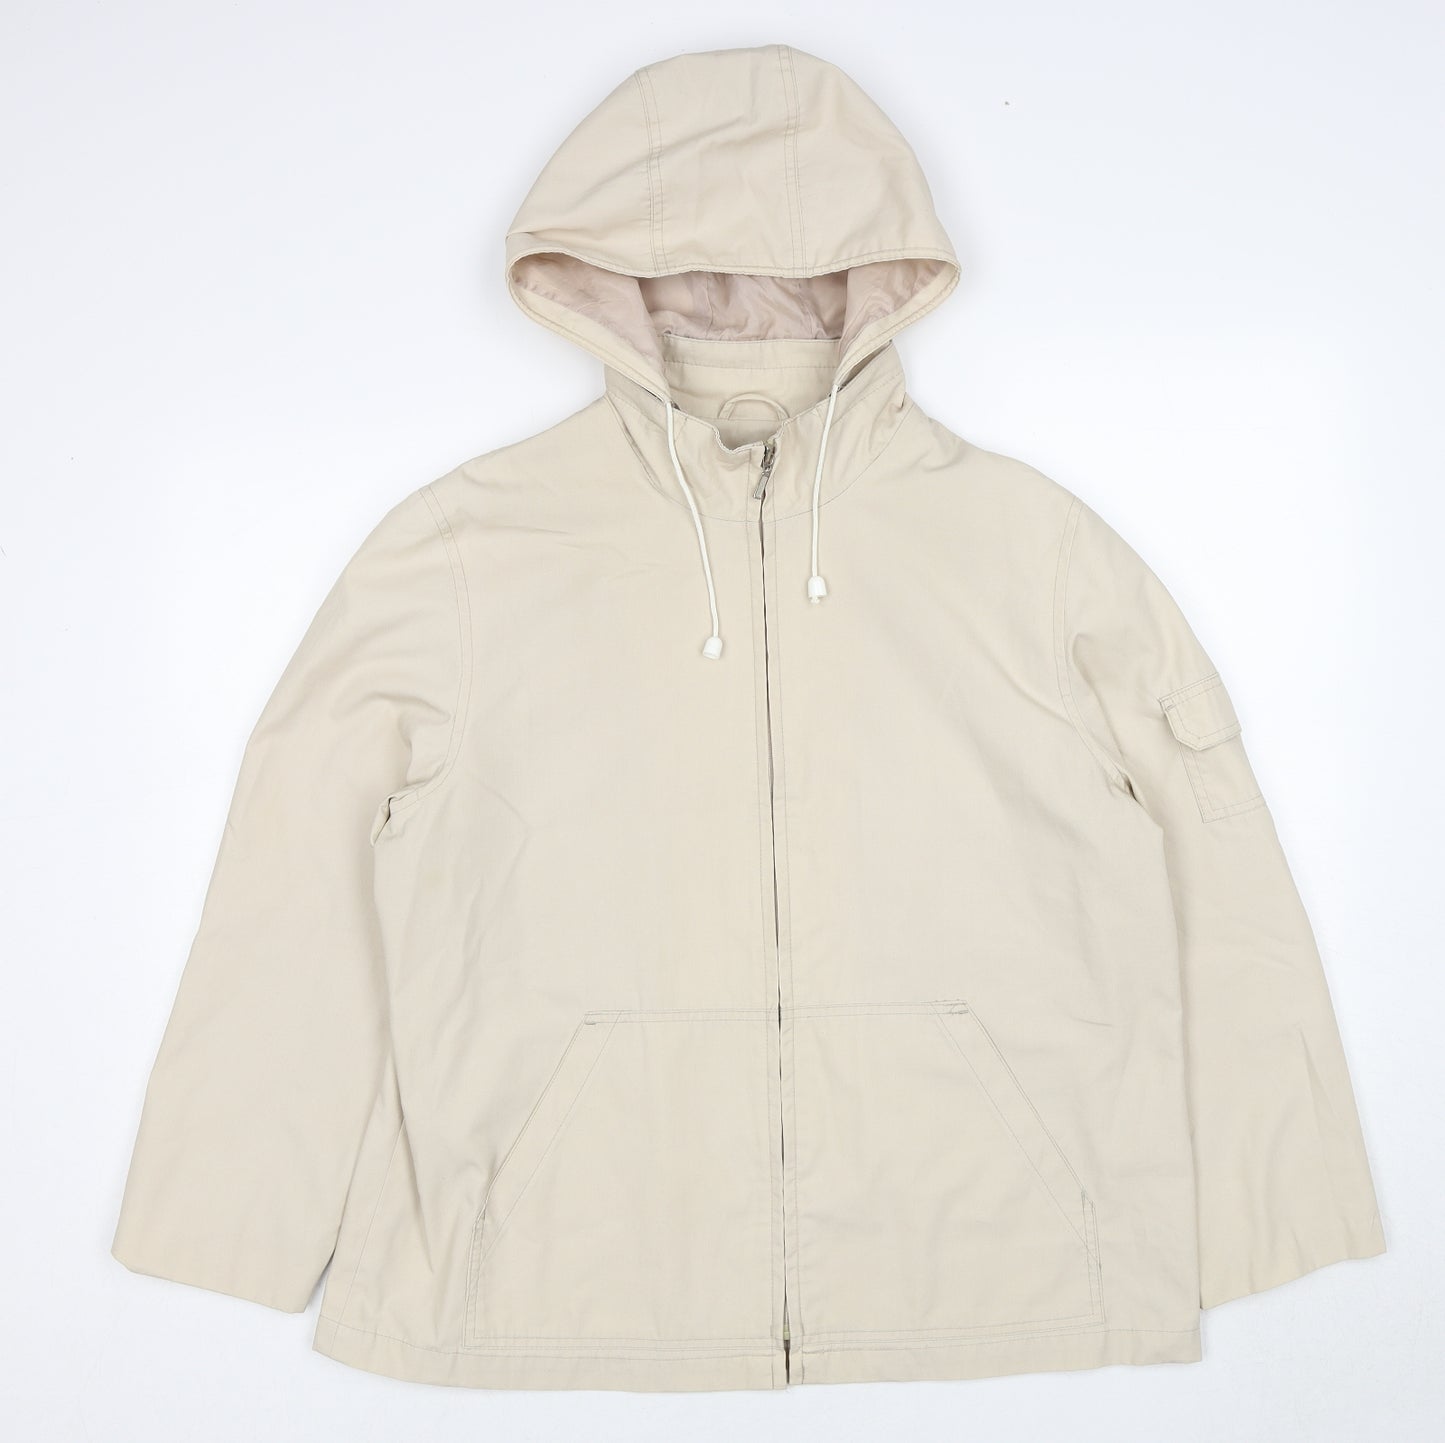 BHS Womens Beige Rain Coat Coat Size 16 Zip